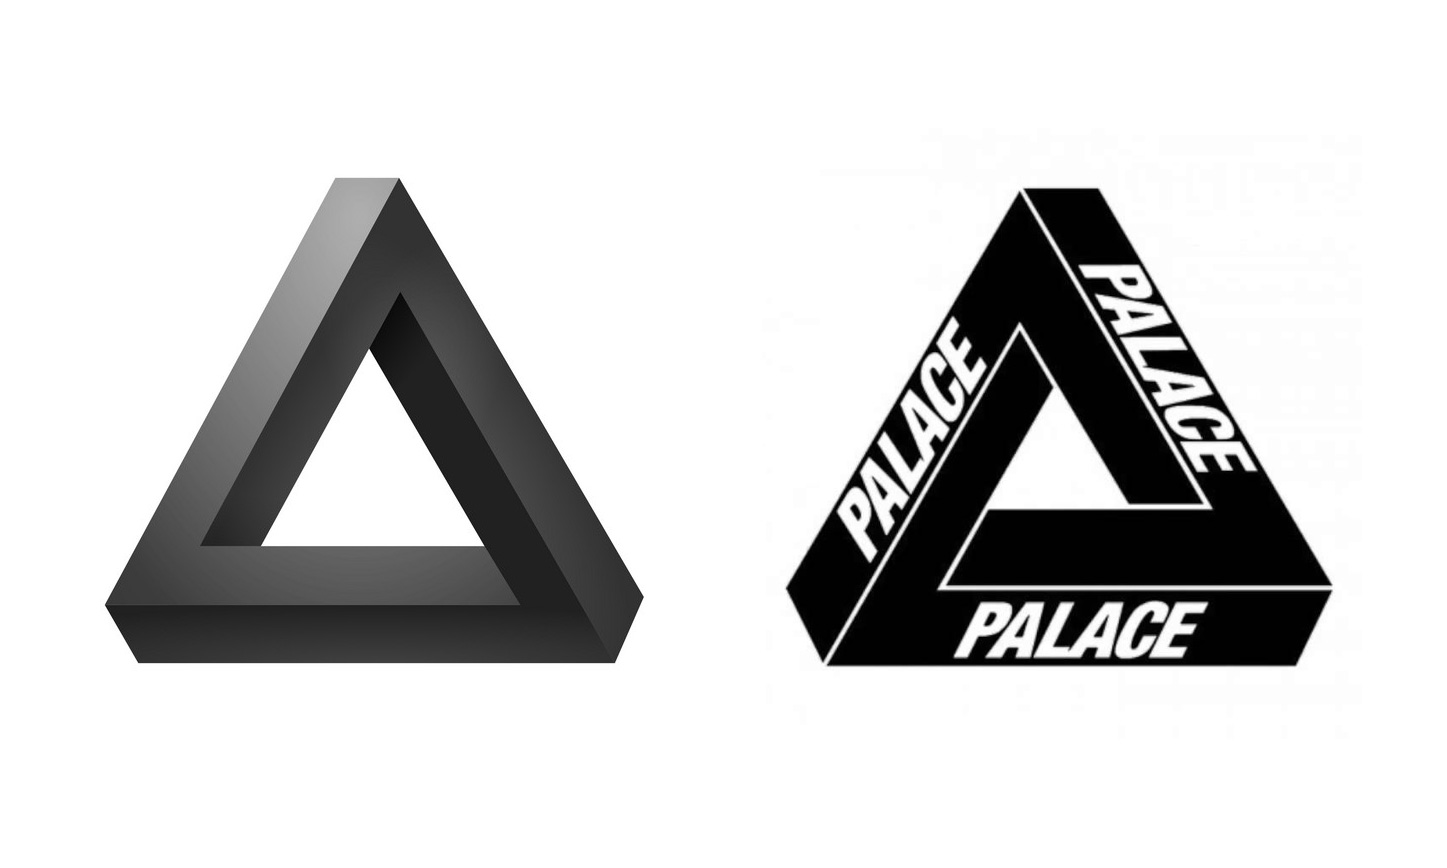 他创造了 palace logo,却不在乎没人认识自己